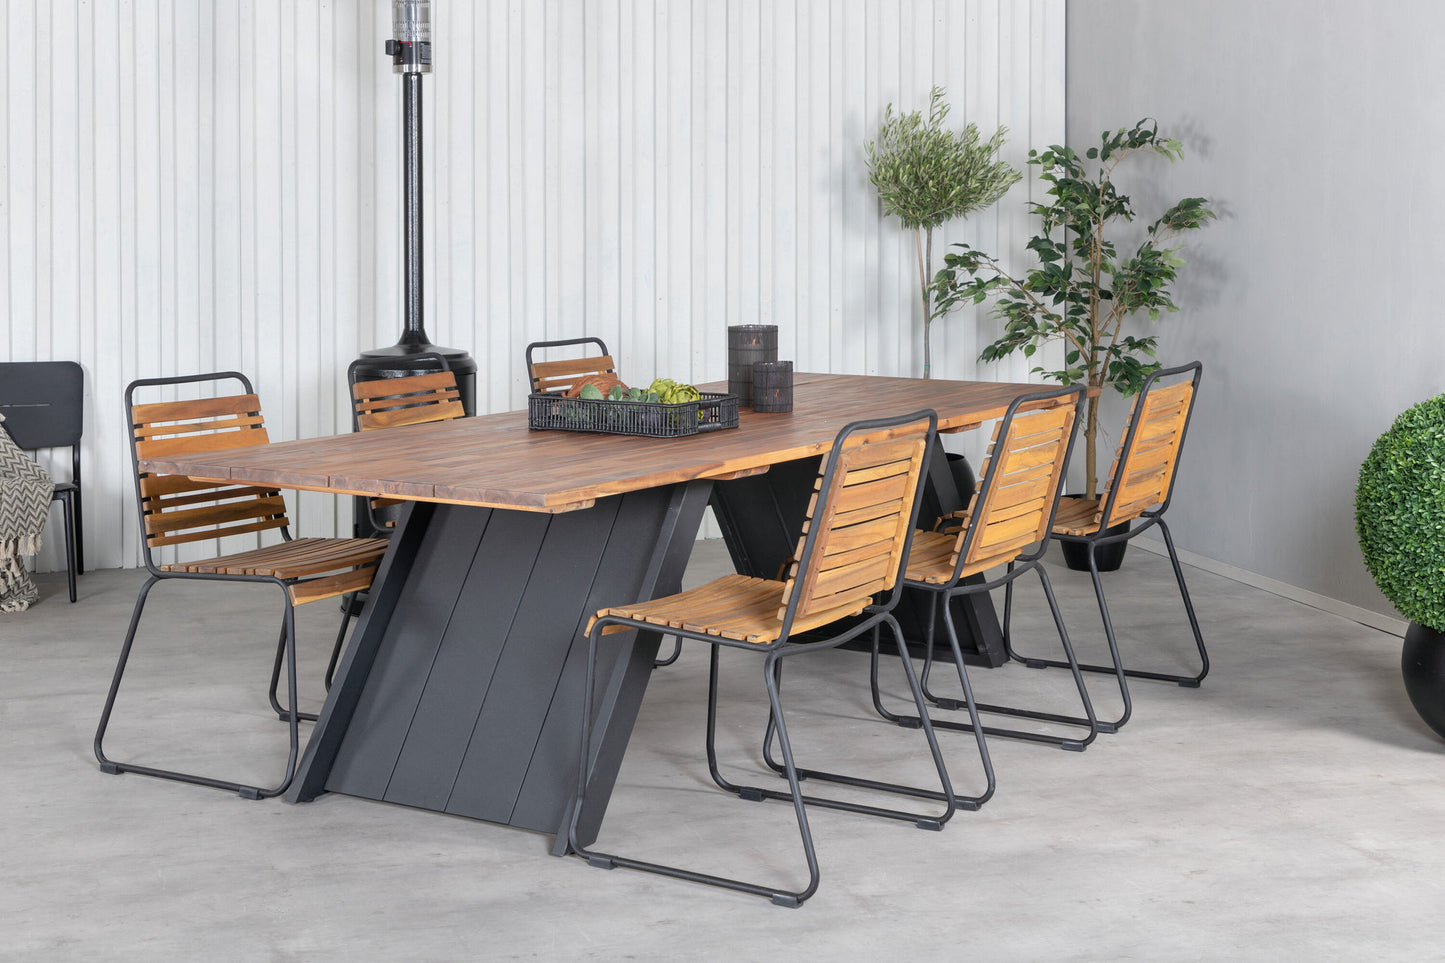 Doory - Spisebord, sort stål / akacie top i teak look - 250*100cm+Bois Spisebordsstol - Sort Alu / akacia